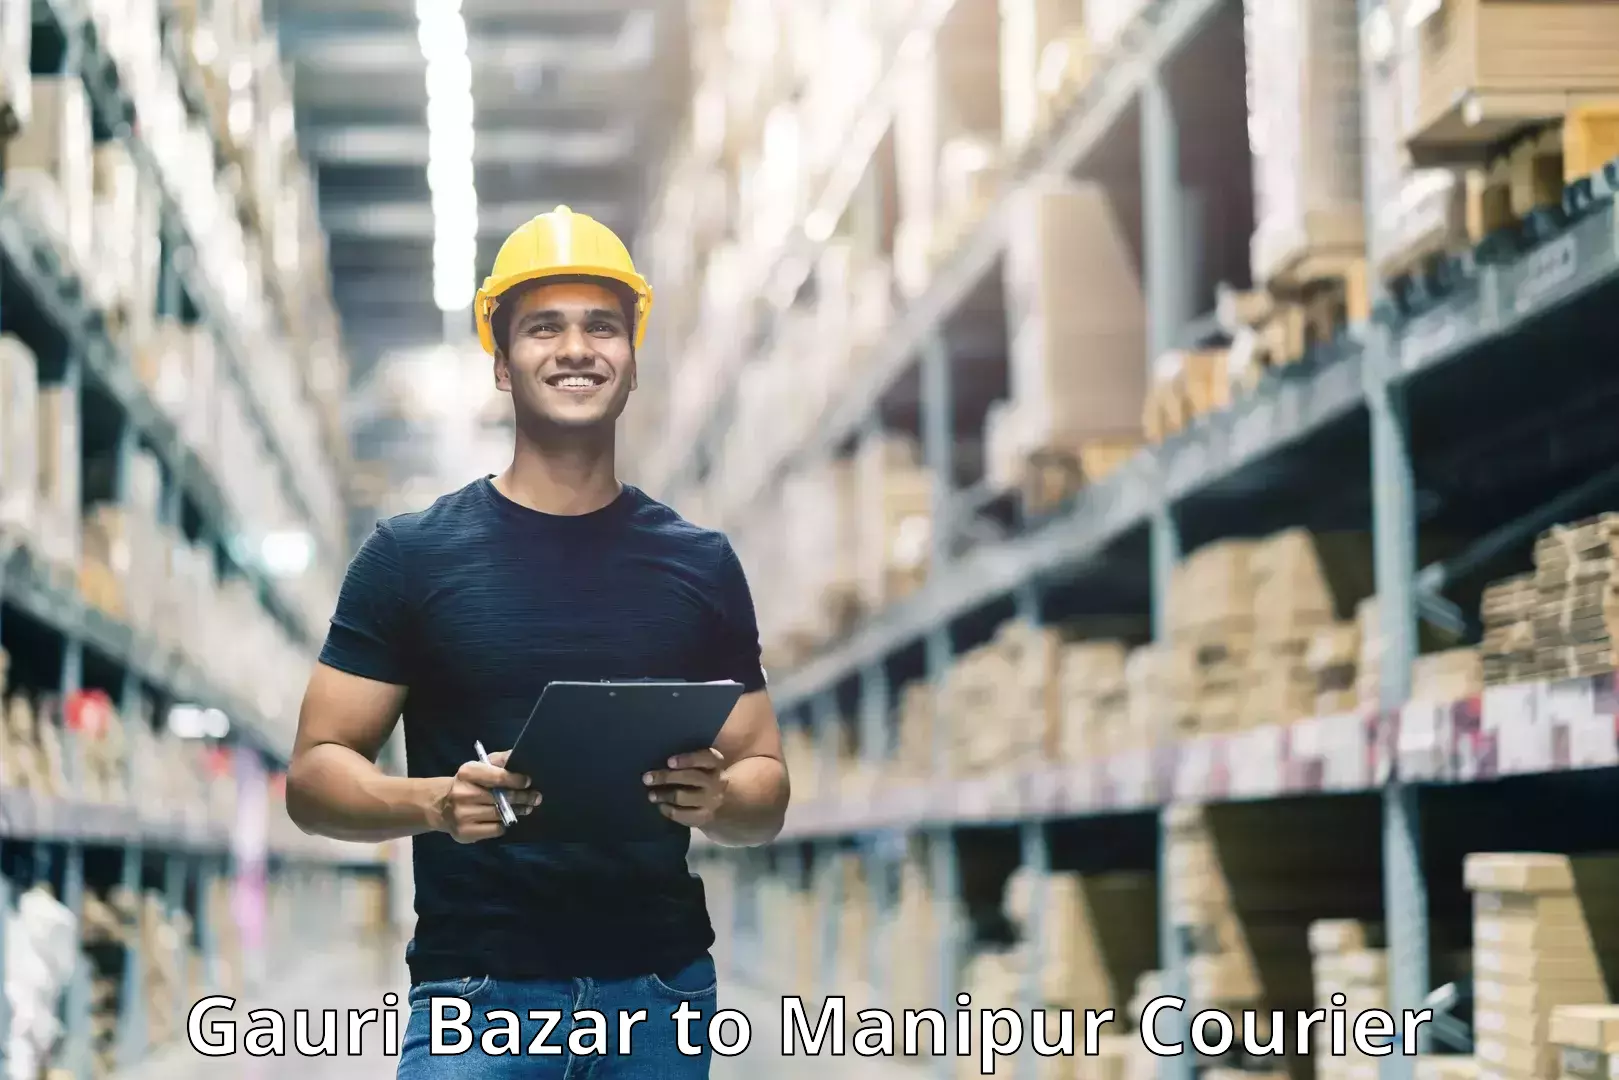 Global logistics network Gauri Bazar to Manipur